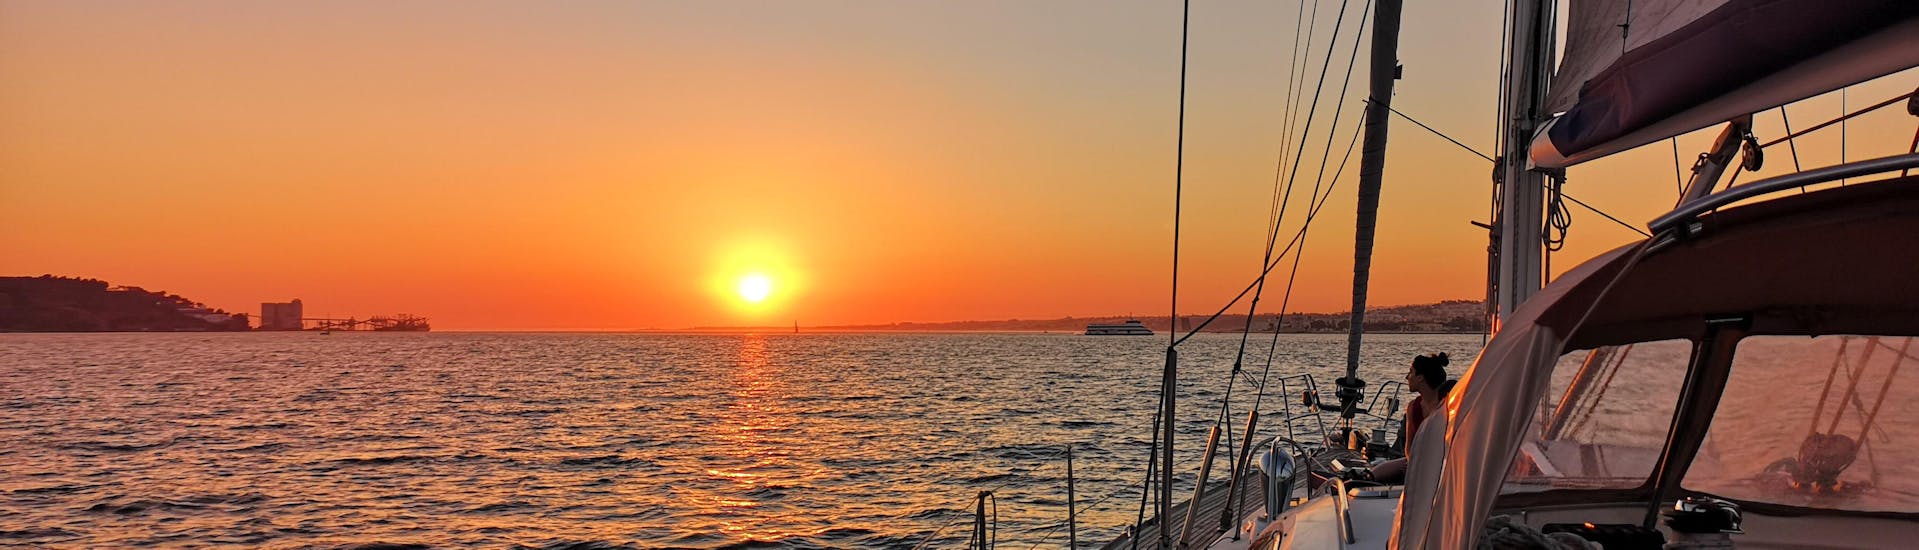 Guardare il tramonto durante la gita in barca a vela al tramonto sul Tago